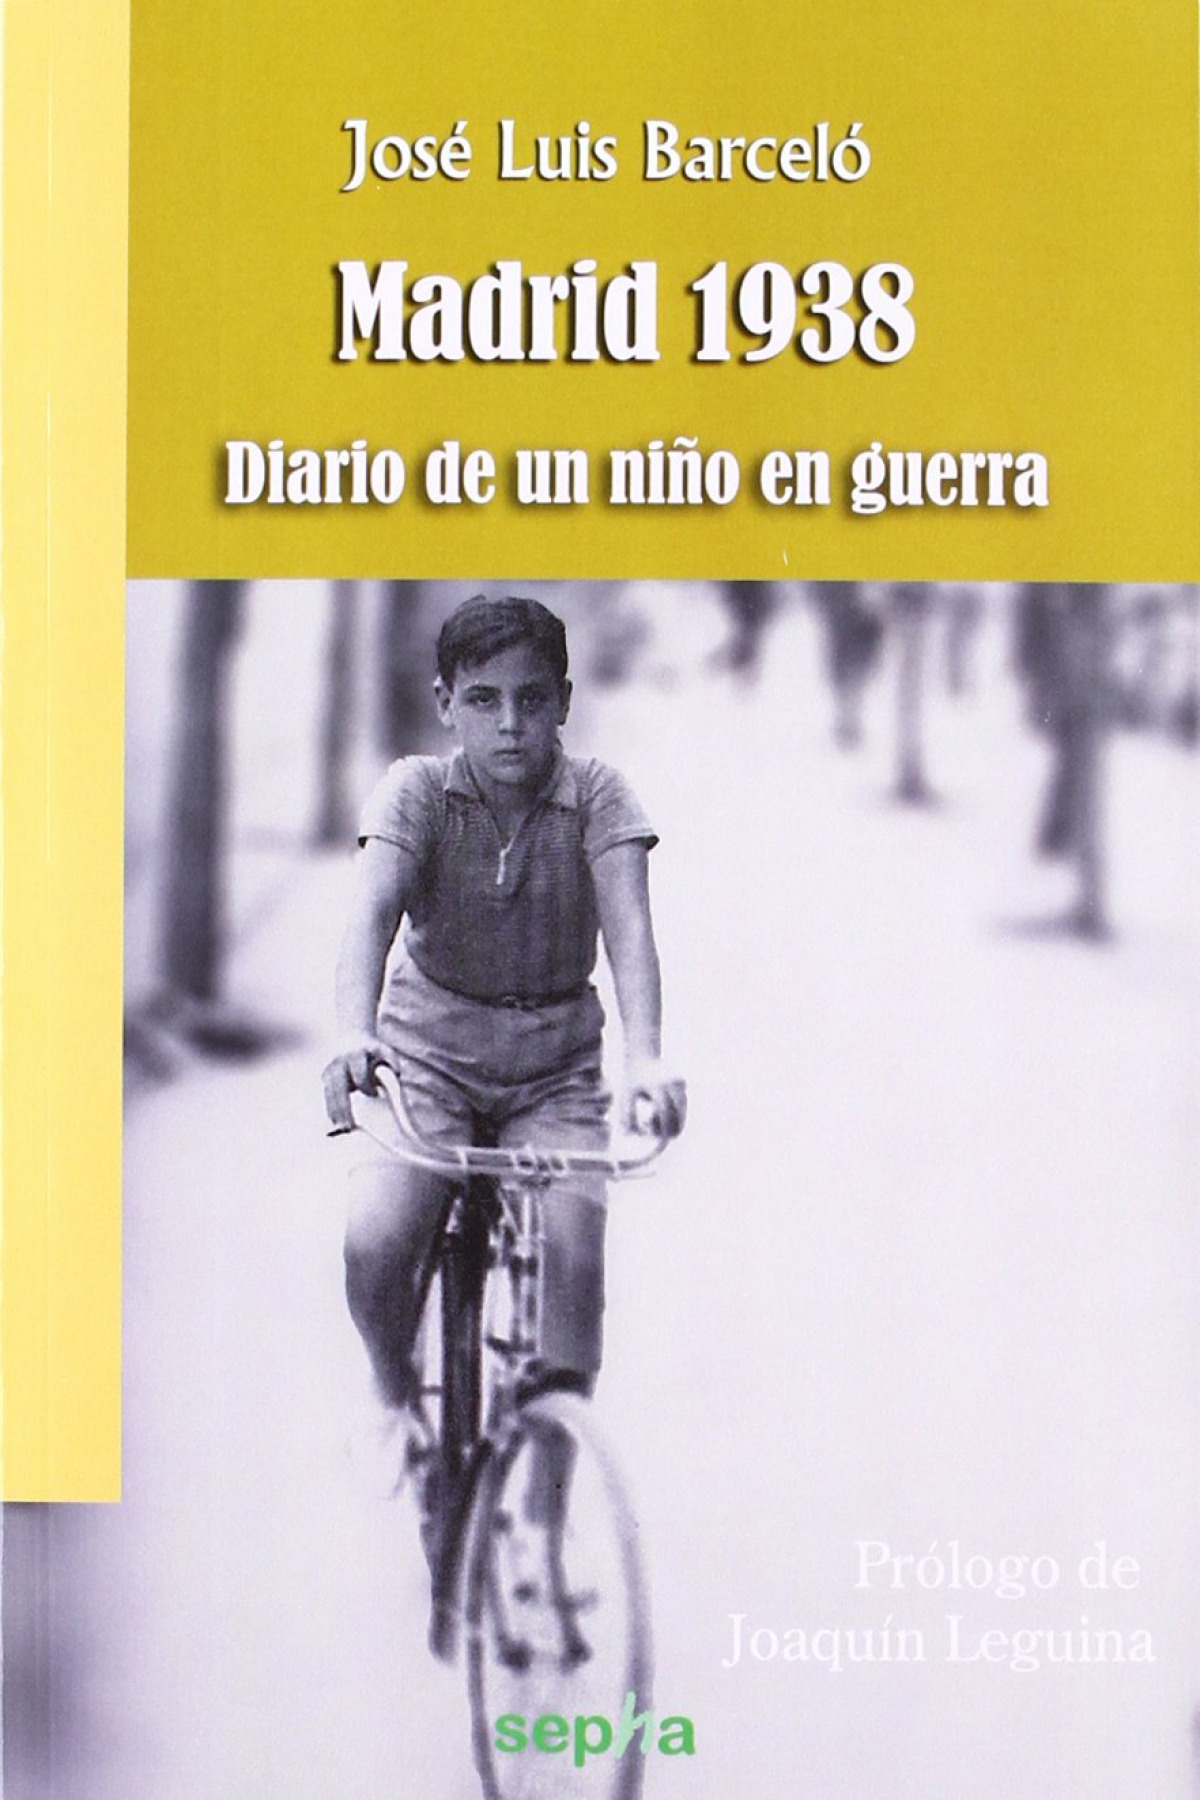 Madrid 1938 Diario de un niño en guerra - Leguina, Joaquin